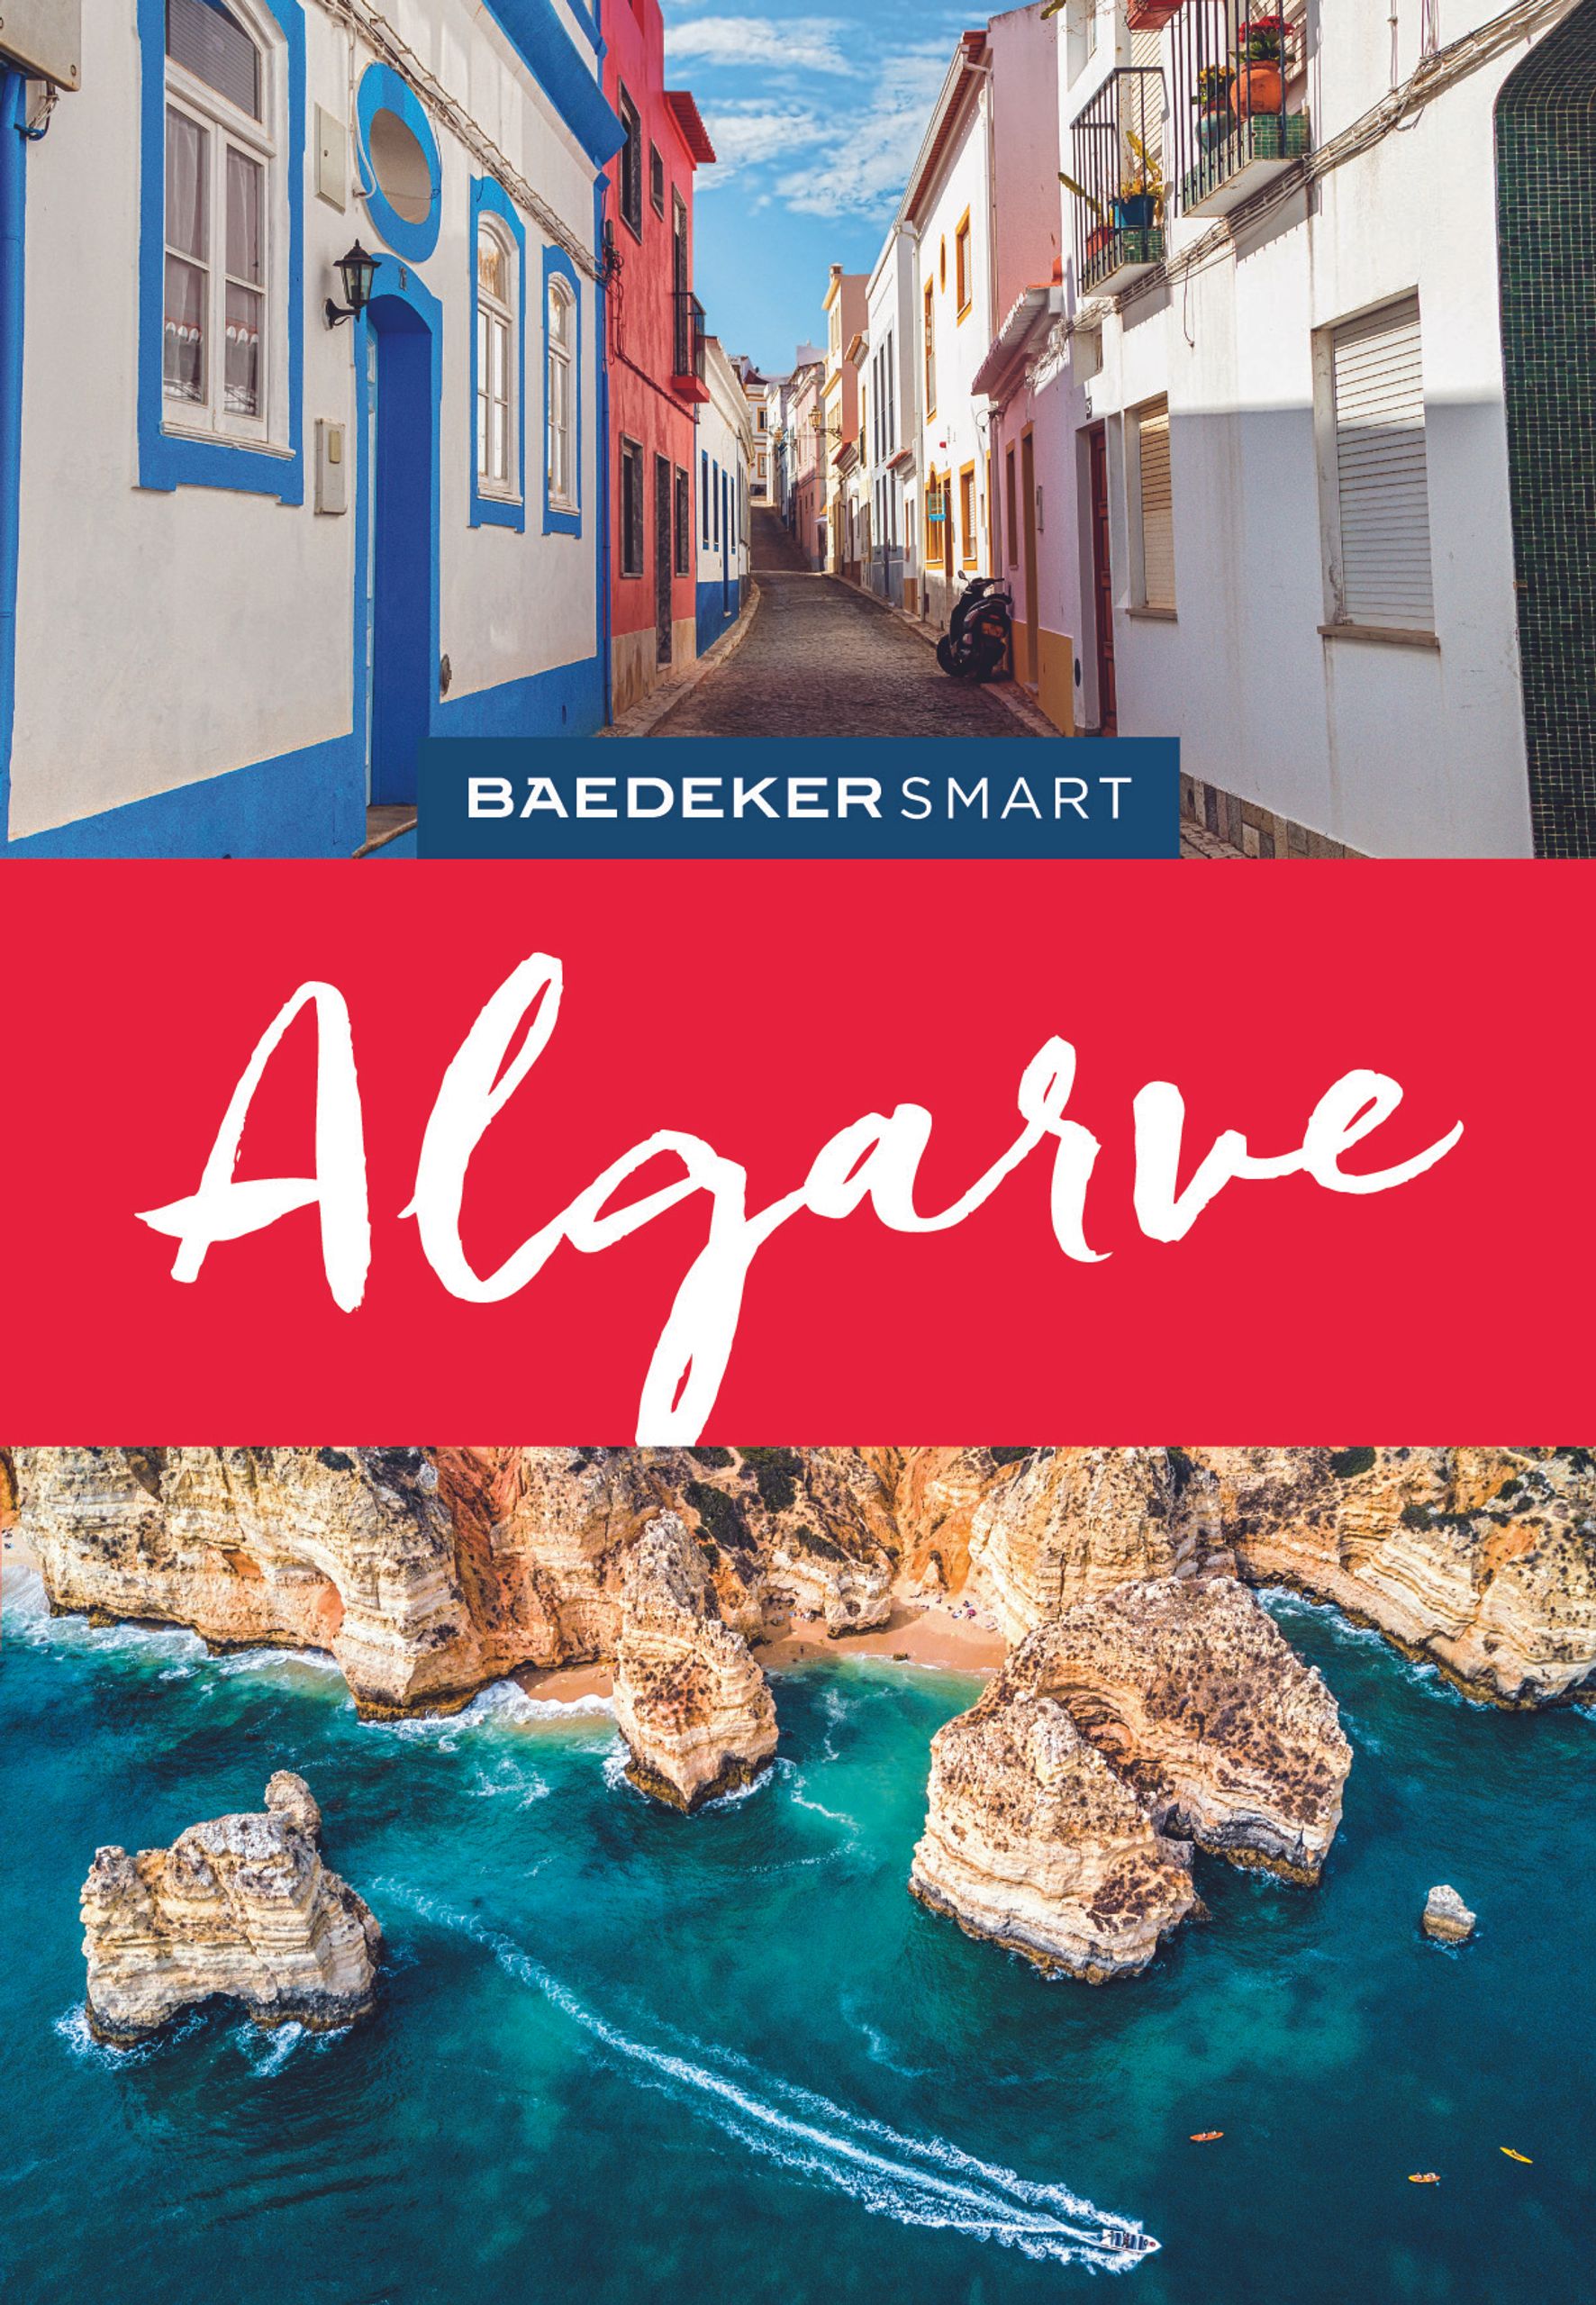 Baedeker Algarve